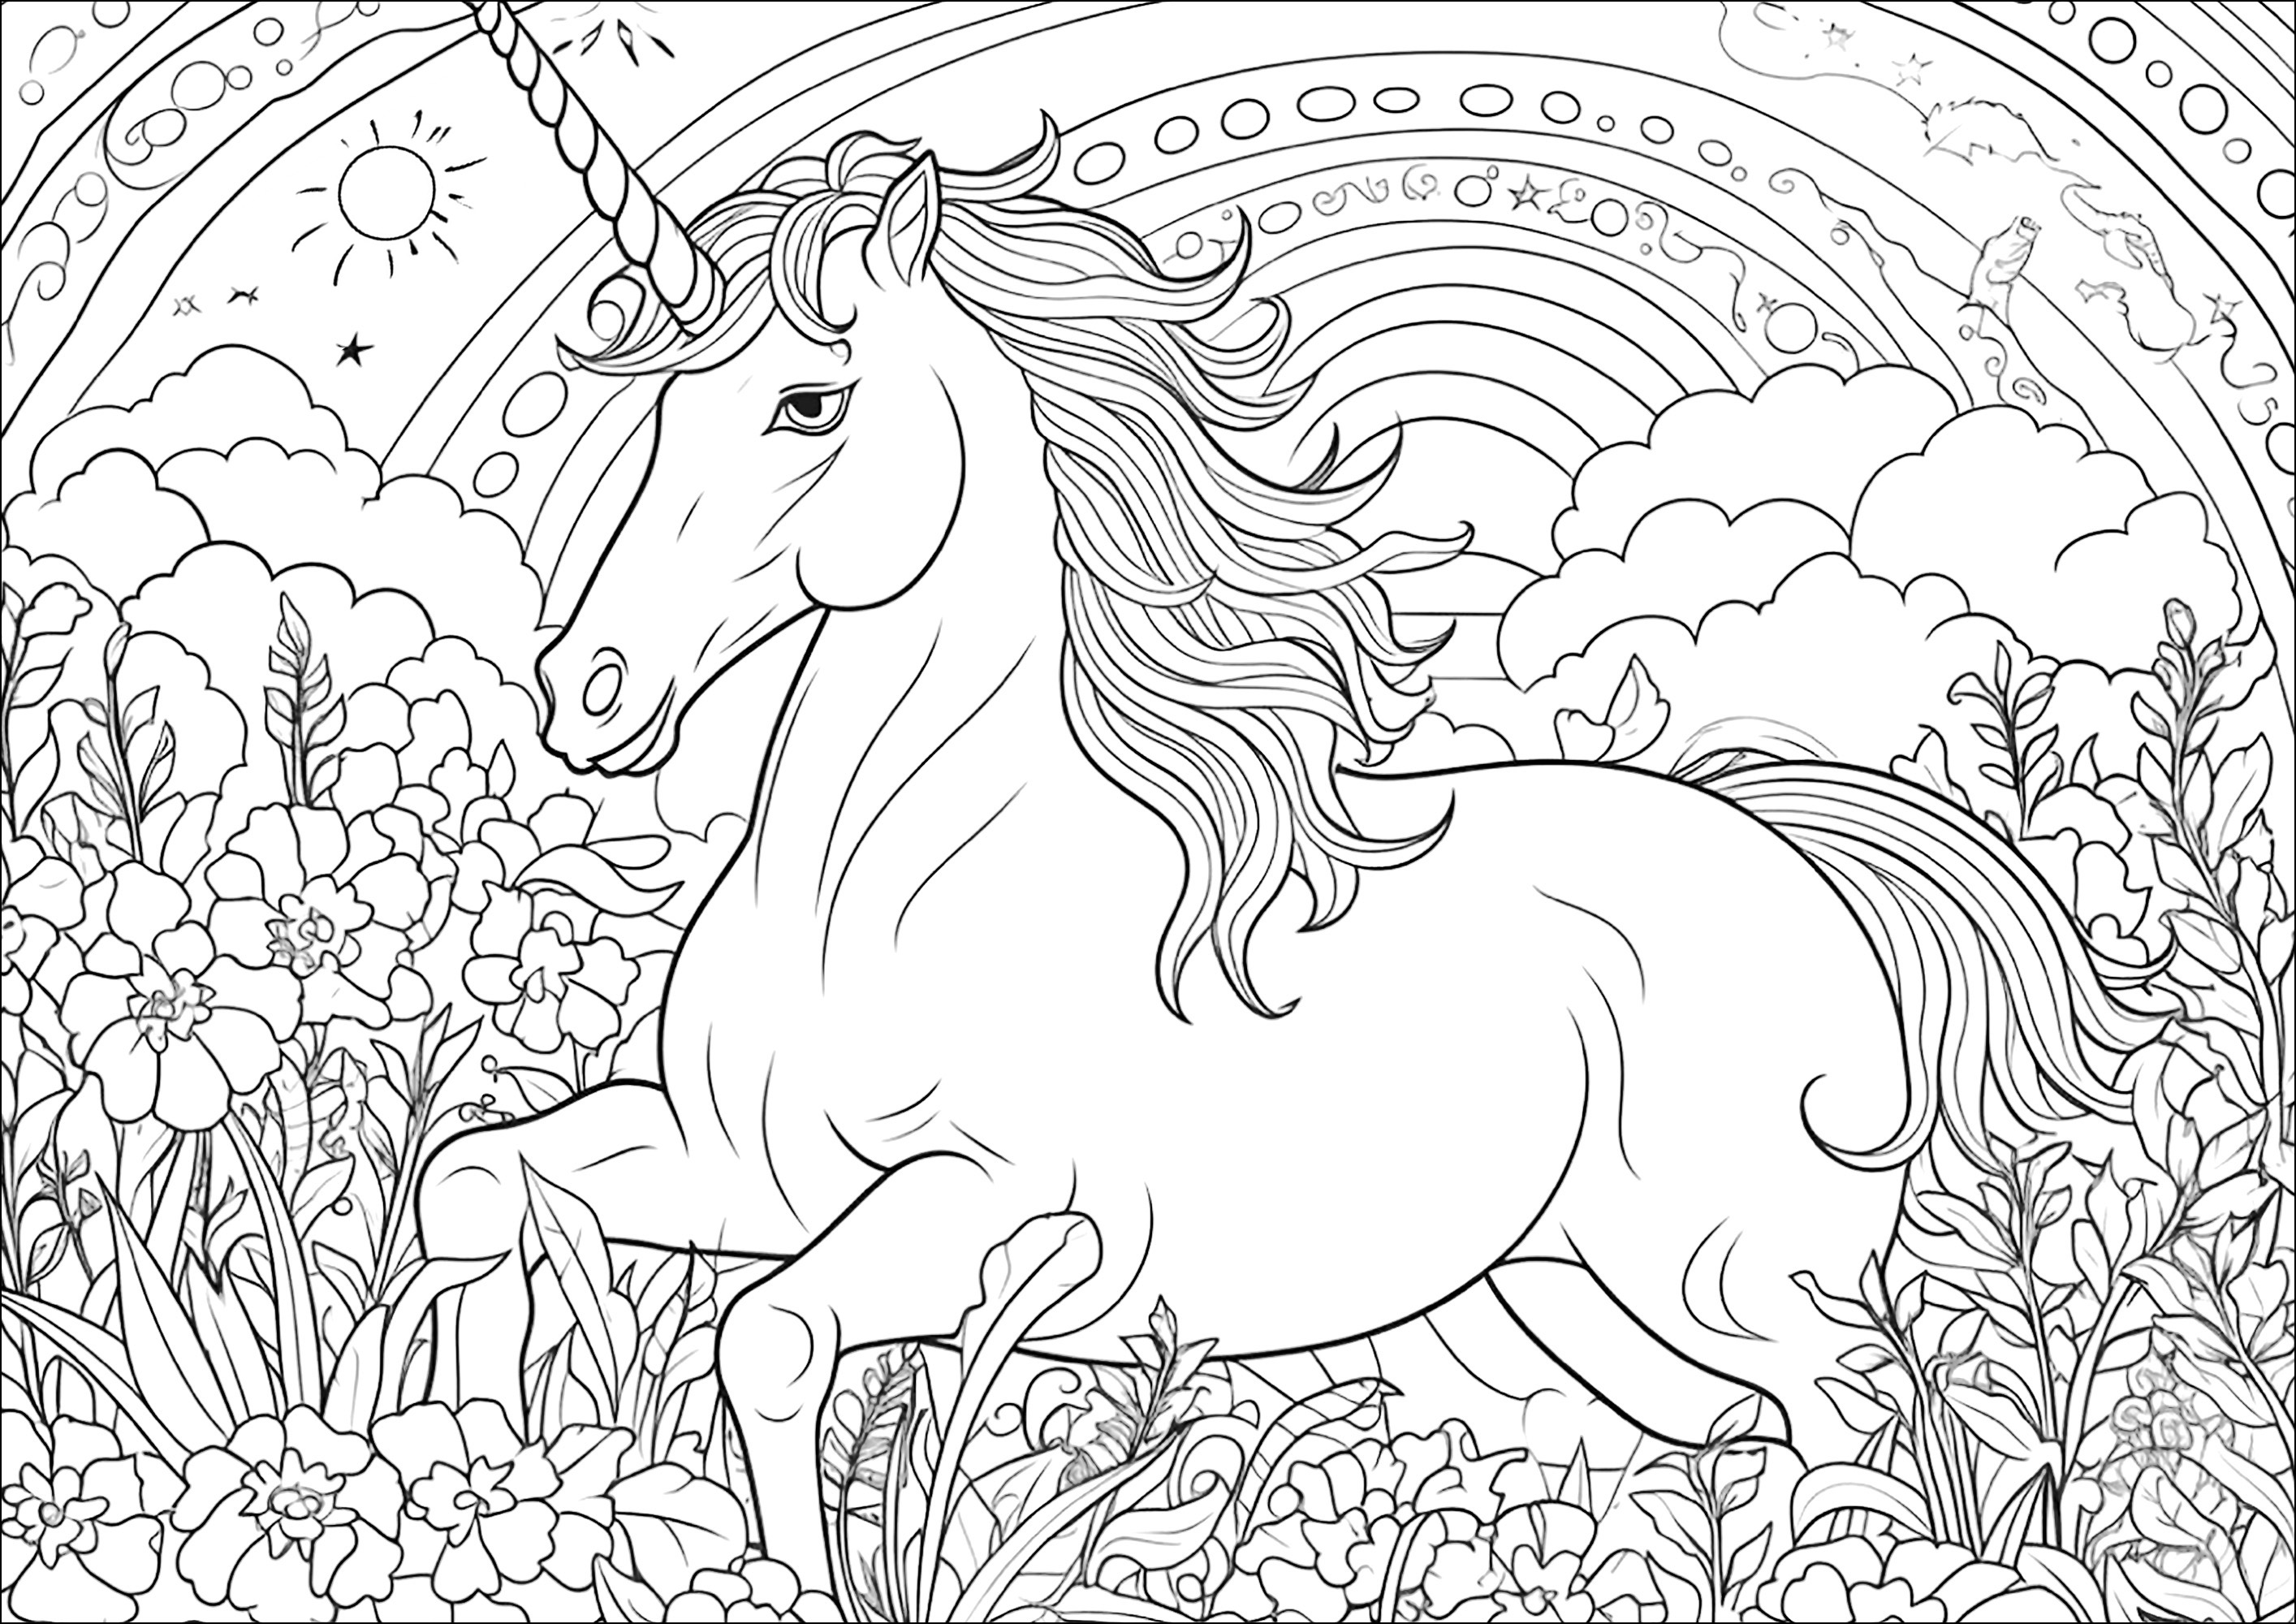 Unicorno al galoppo con arcobaleno e vegetazione